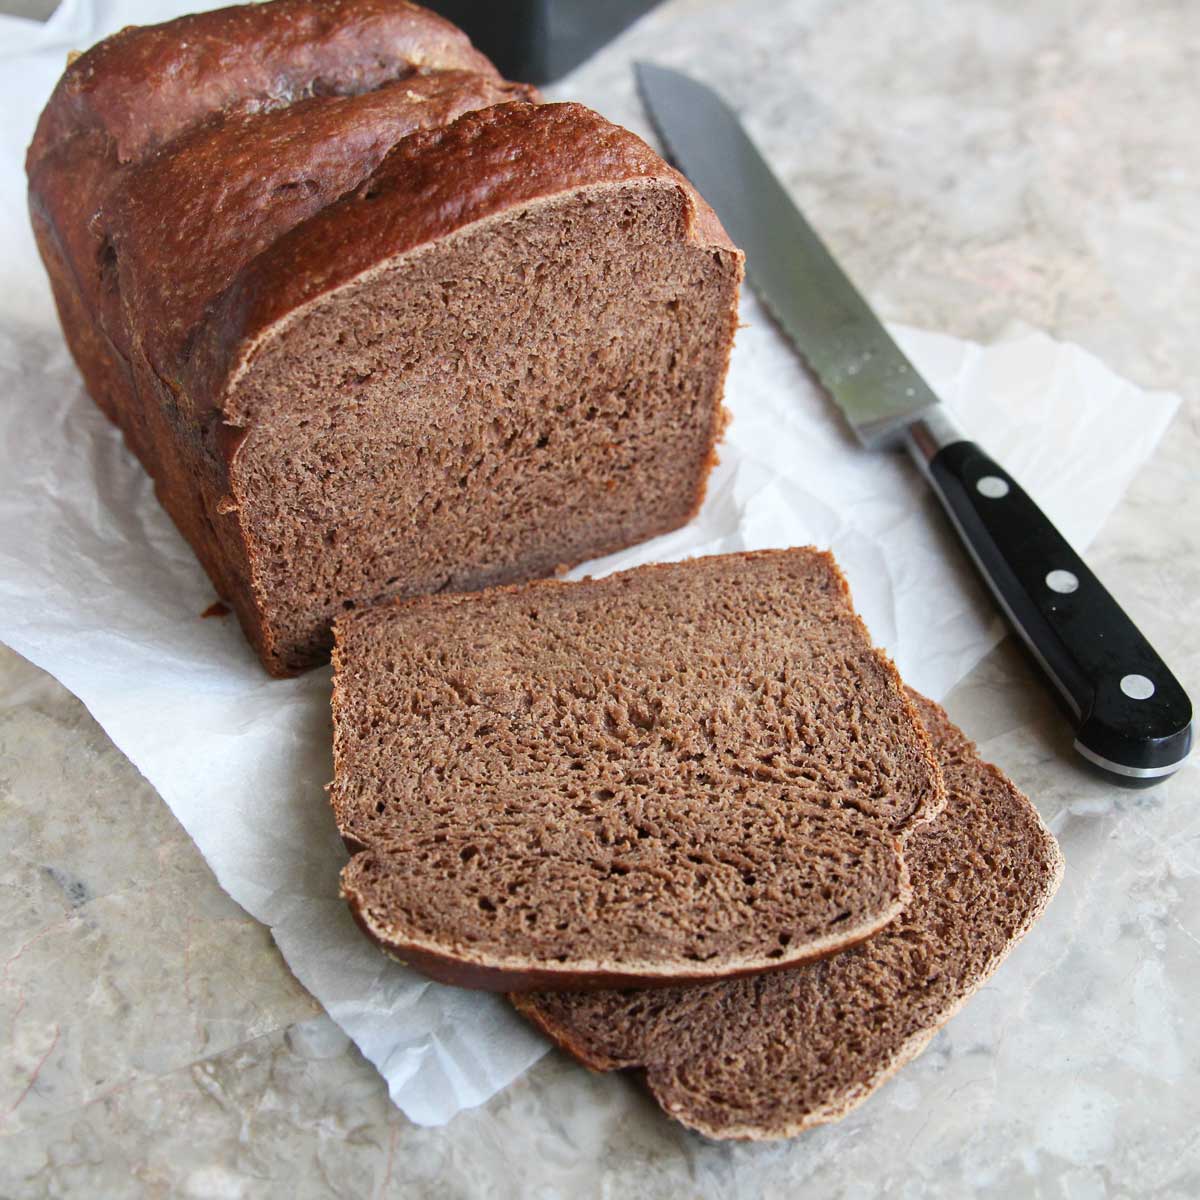 Peanut Butter Yeast Bread (A Healthier Vegan "Brioche" Recipe) - bread